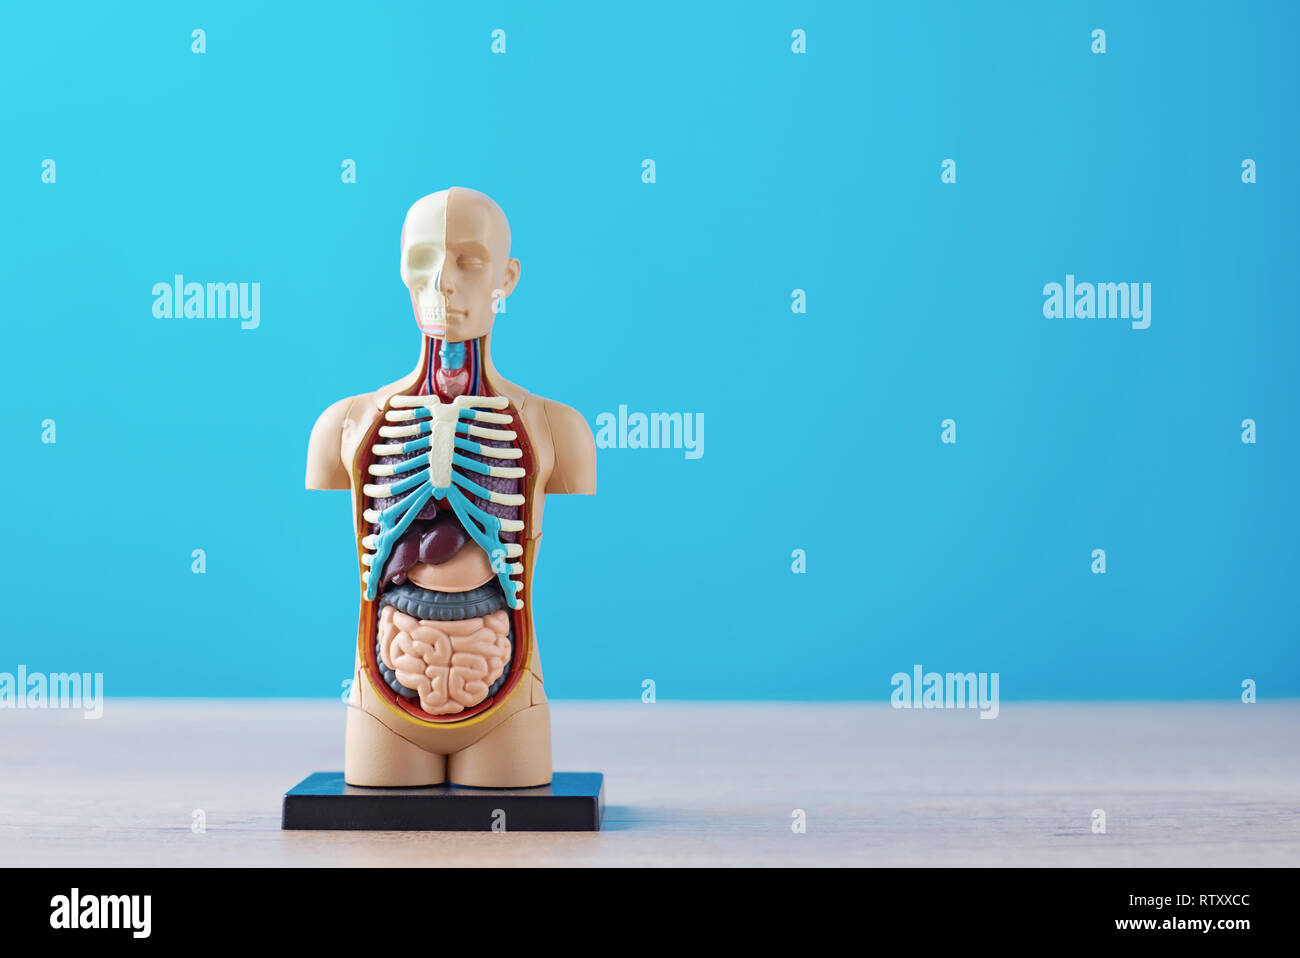 Anatomische Modell des menschlichen Körpers mit inneren Organen auf blauem Hintergrund. Anatomie Körper mannequin Stockfoto